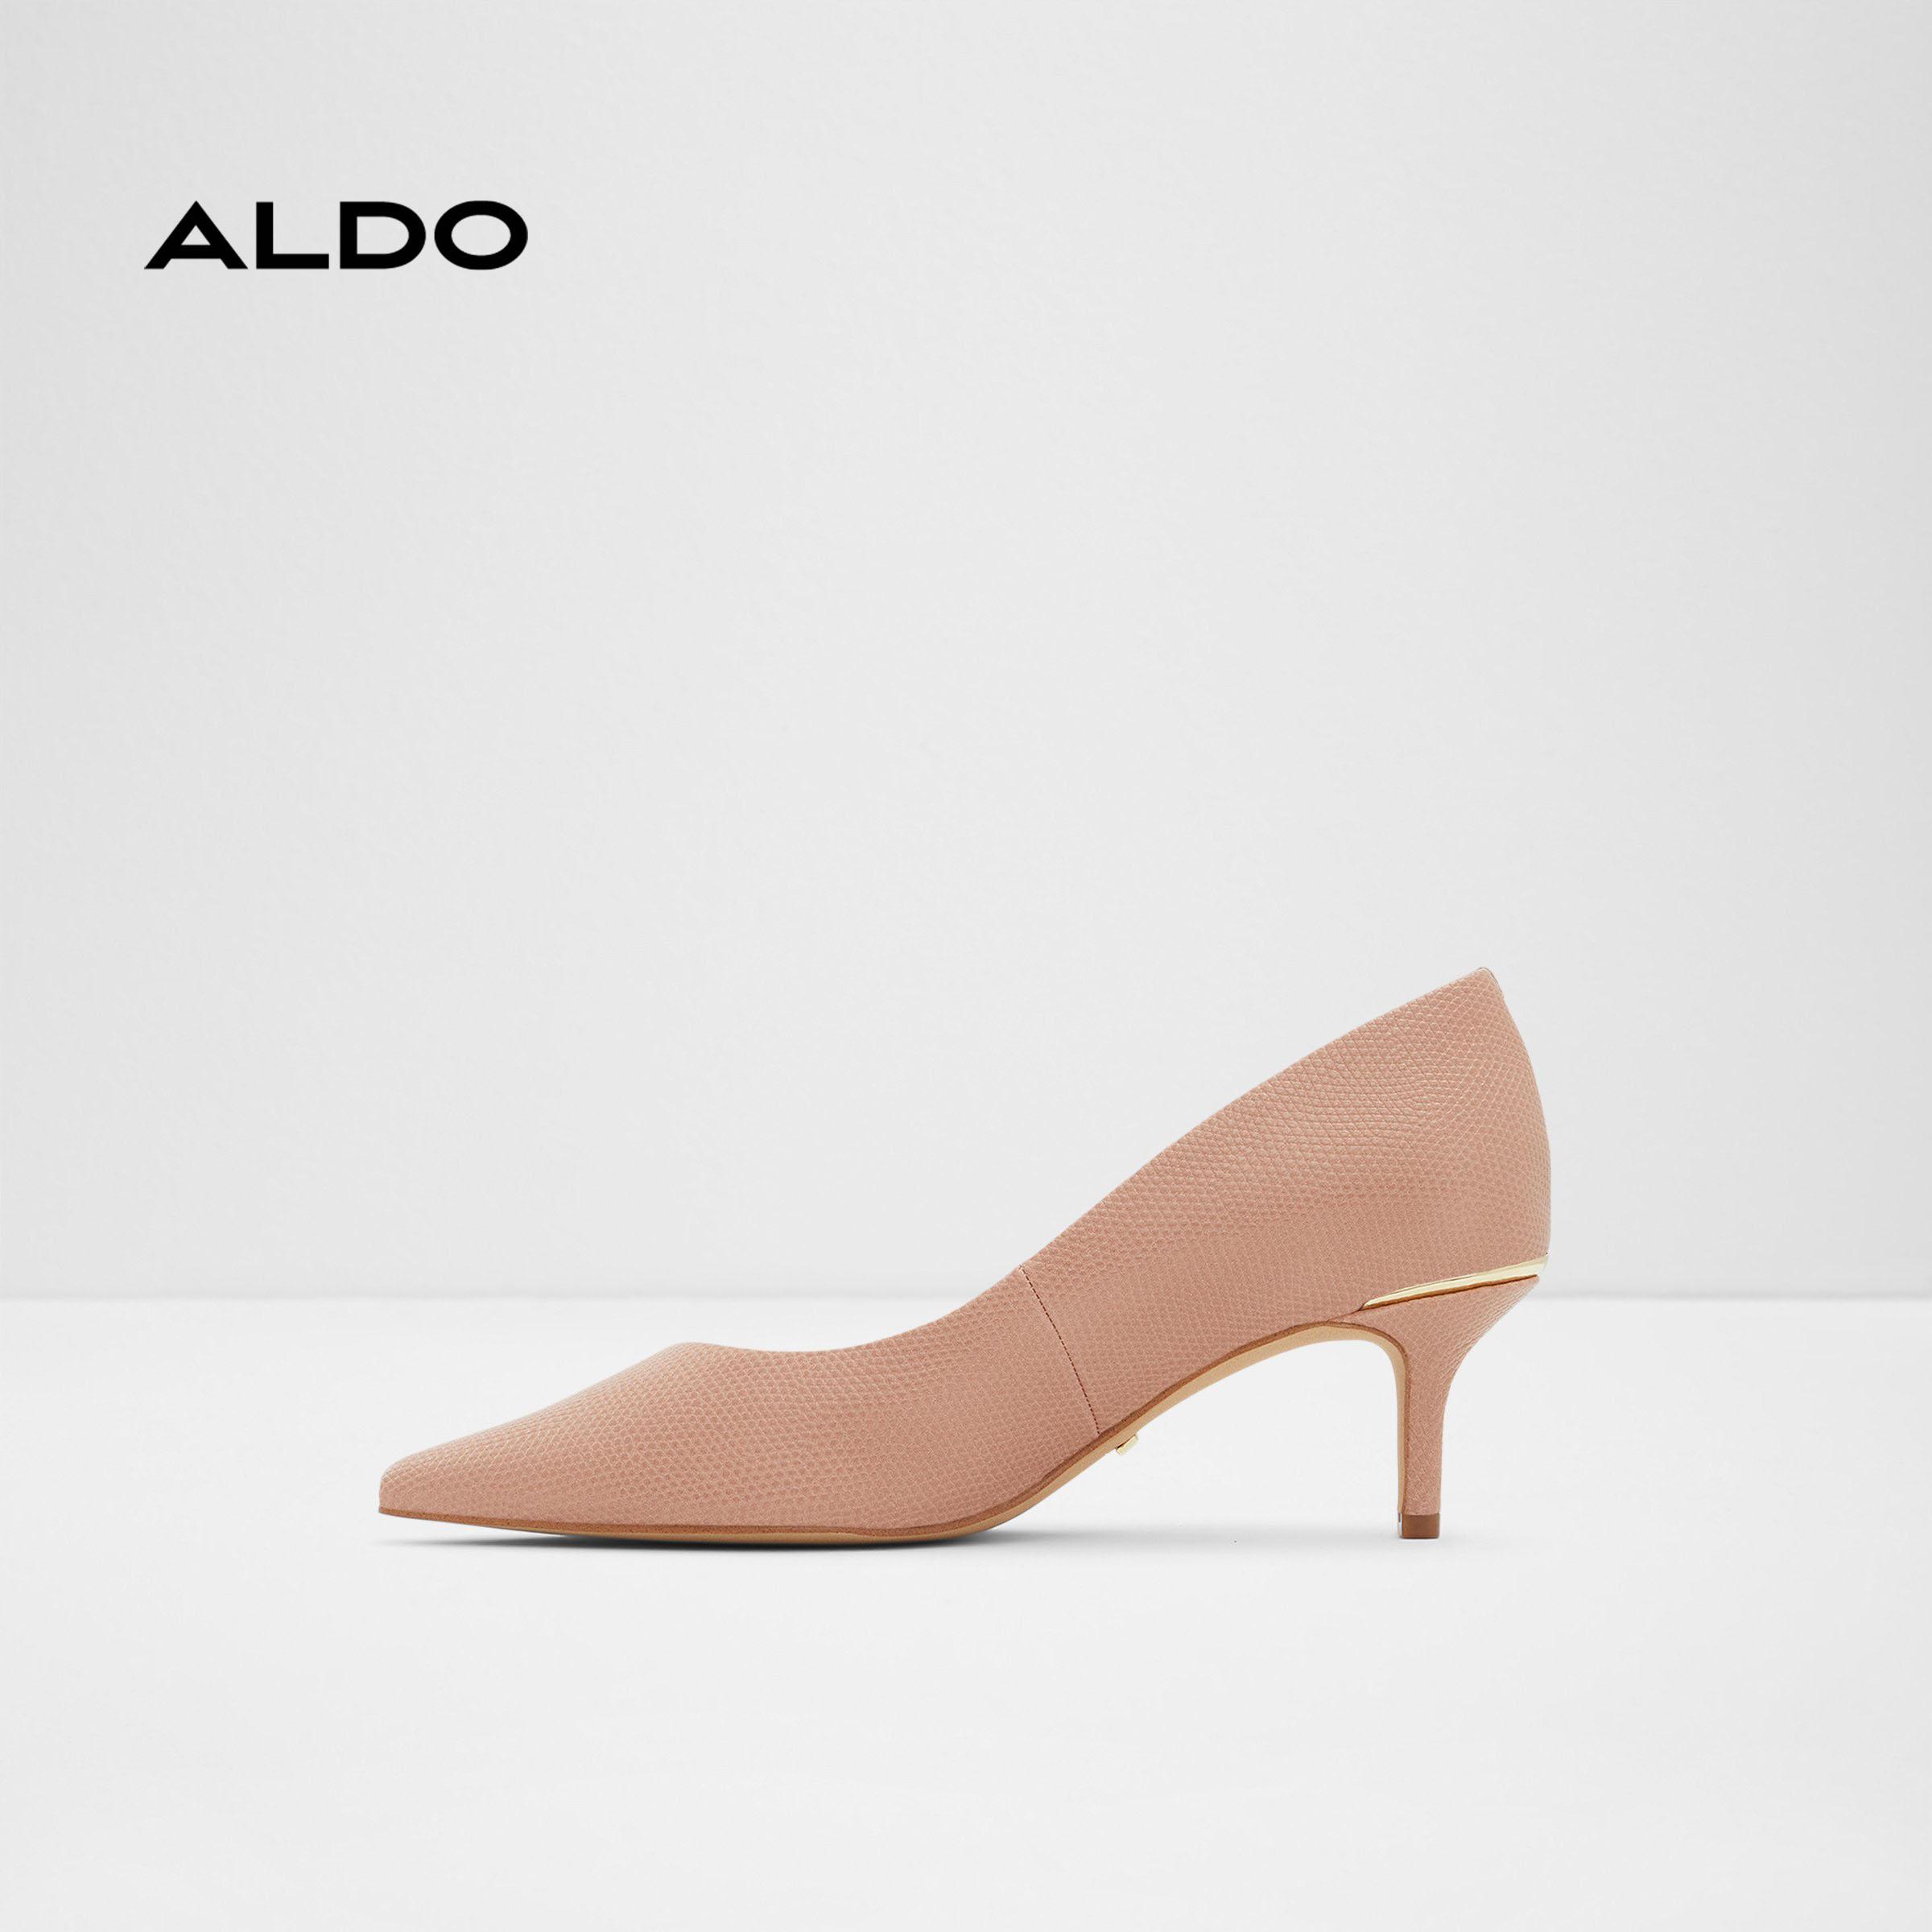 Giày cao gót bít mũi nữ Aldo POLLY